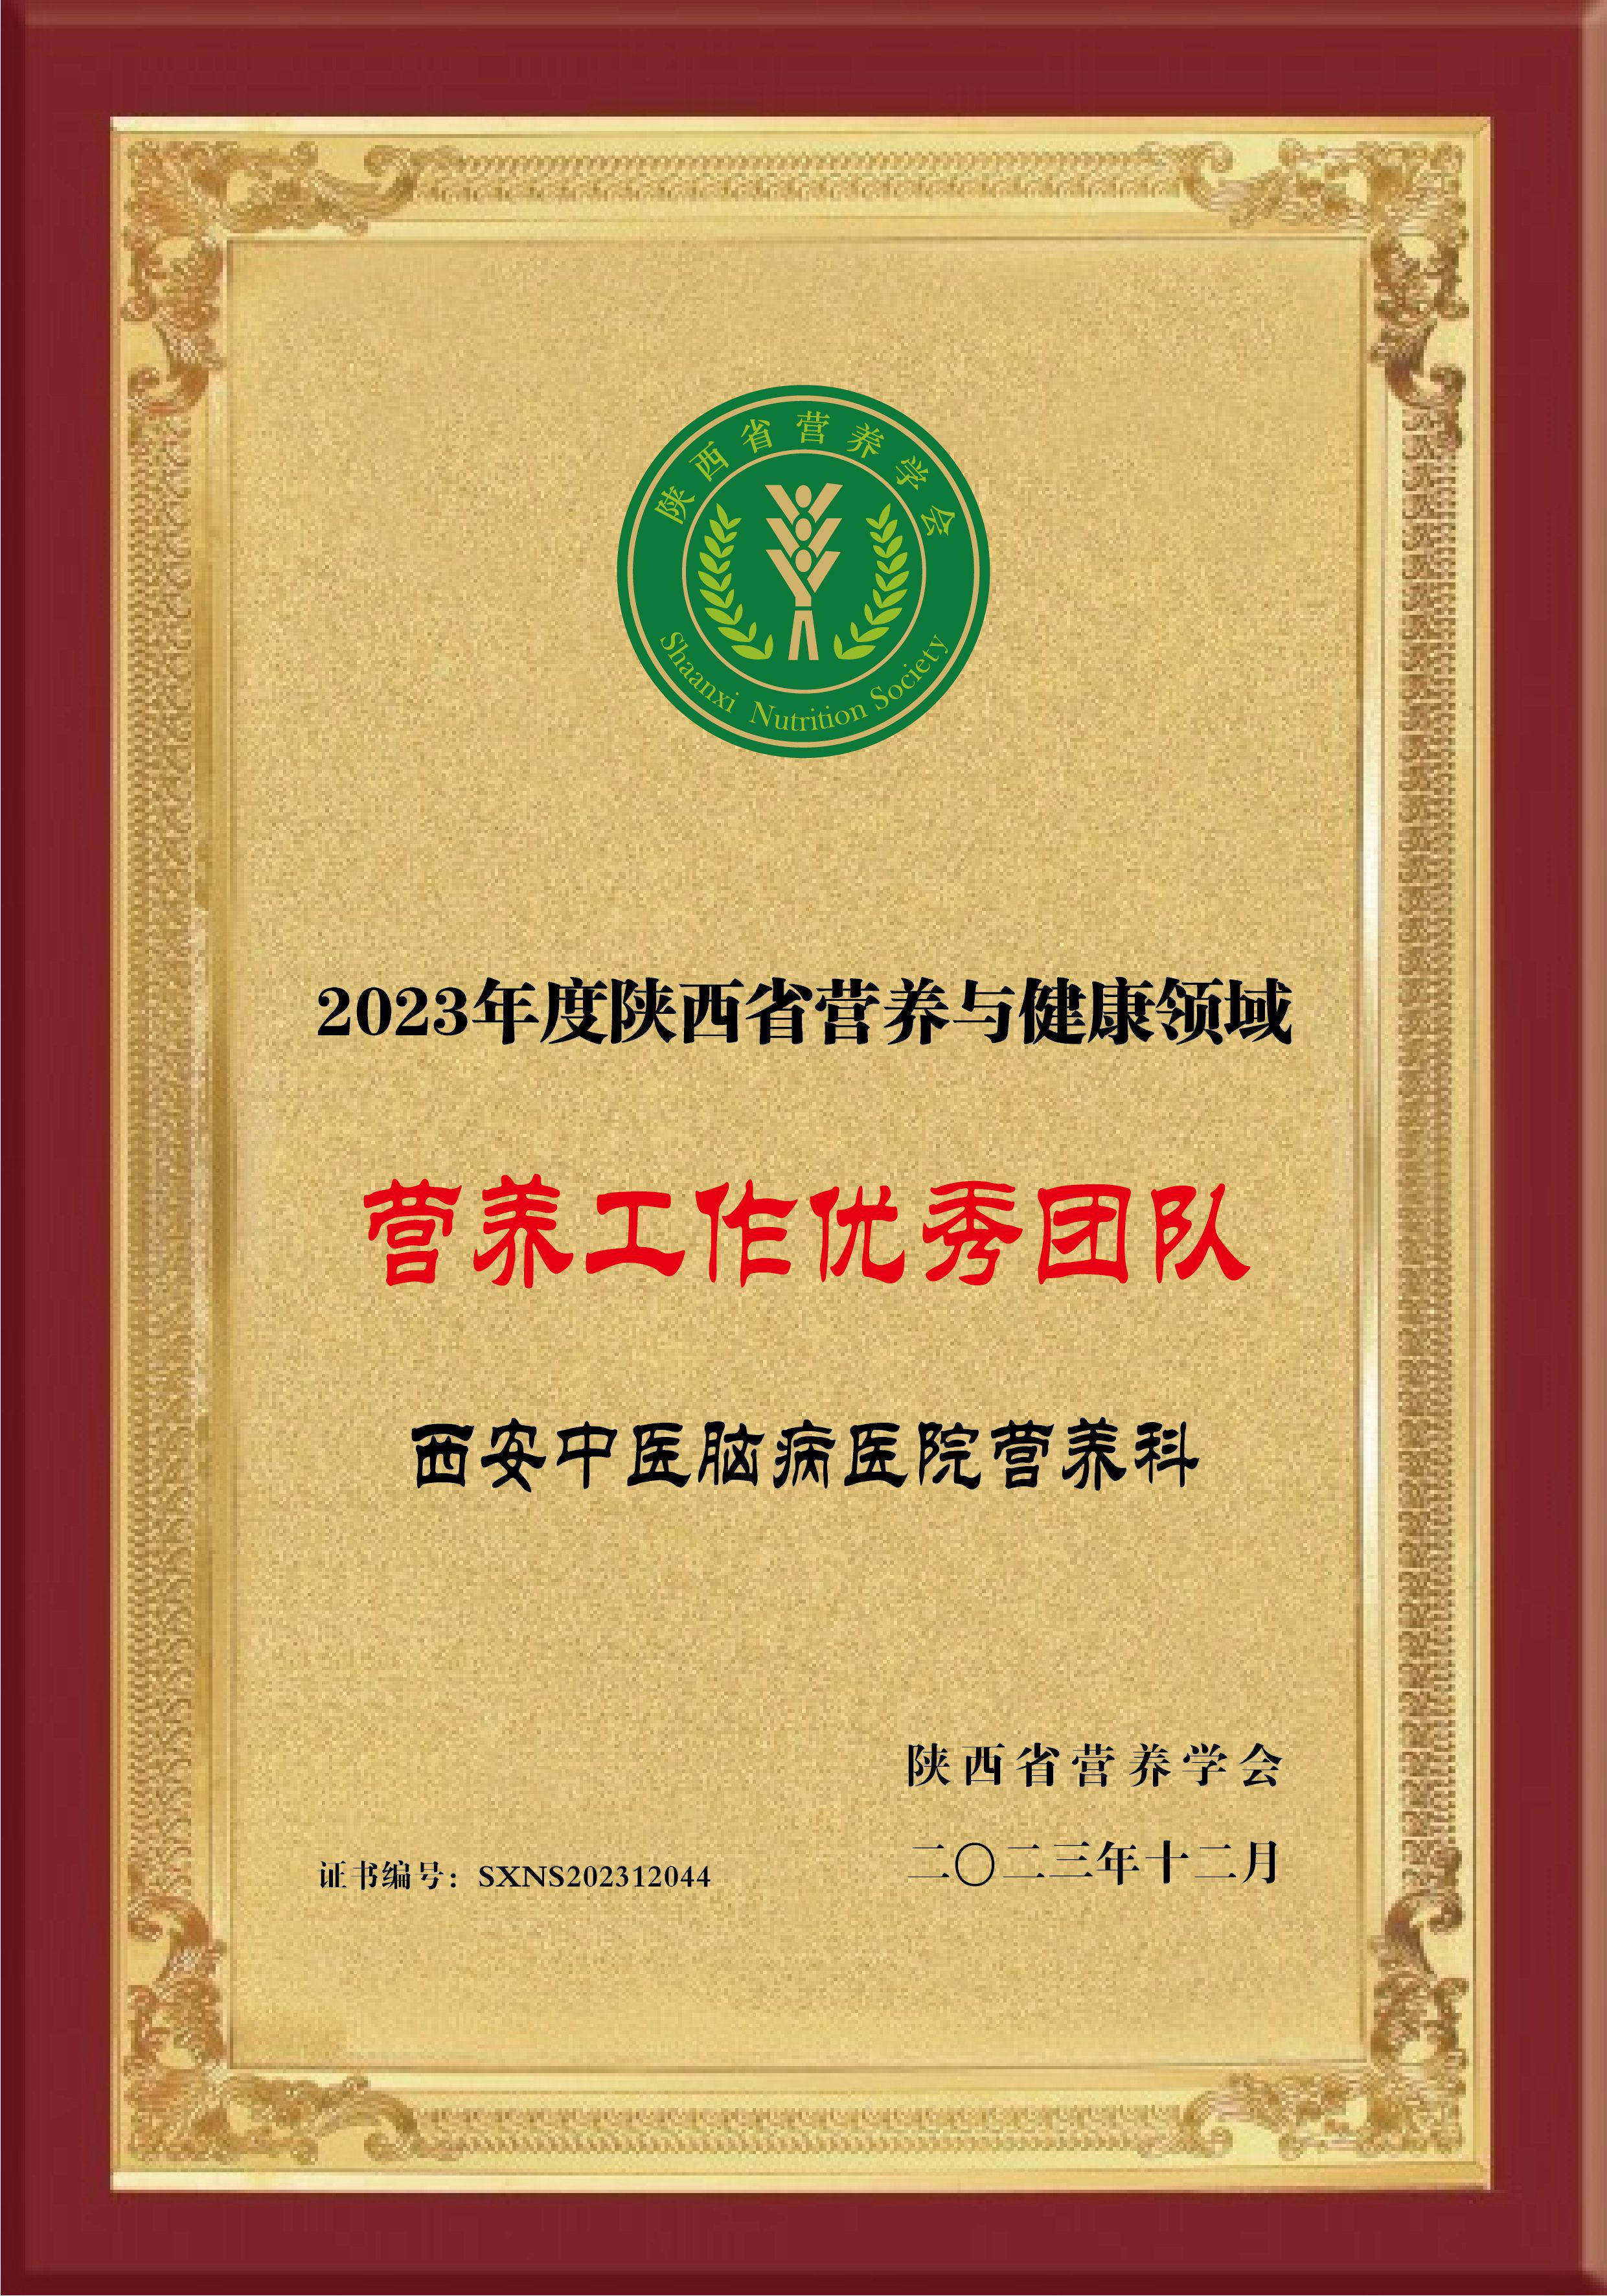 西安中医脑病医院营养科荣获“2023年度陕西省营养与健康领域营养工作优秀团